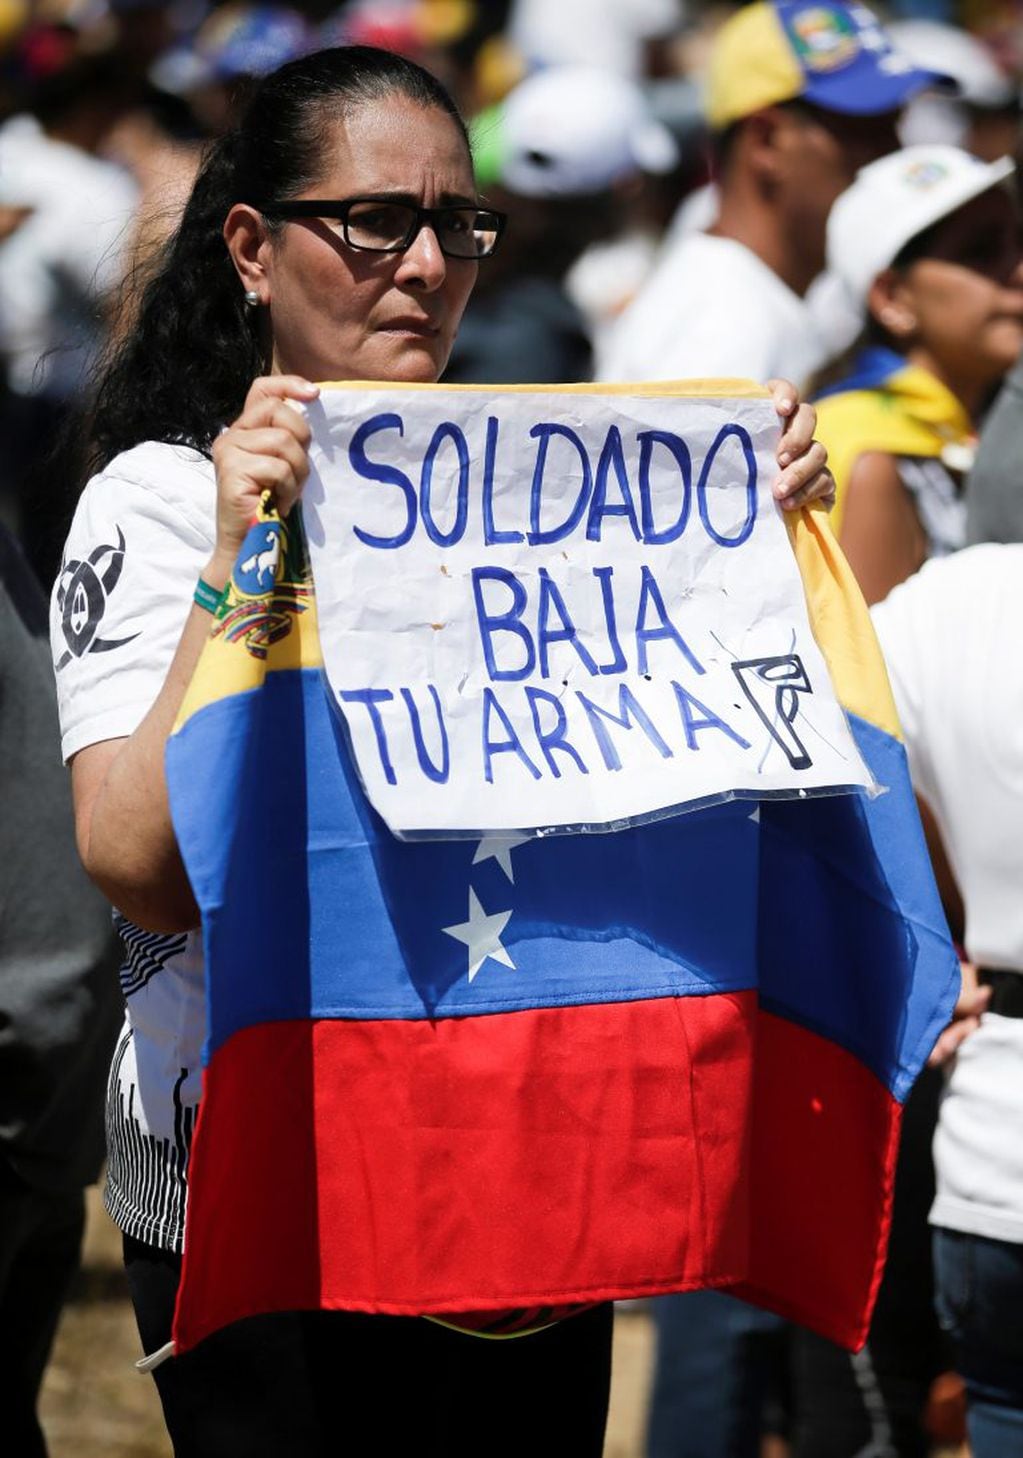 Caracas, Venezuela - Una mujer sostiene una bandera nacional venezolana y un letrero con un mensaje que dice en español: "Soldado baja tu arma" frente a la base militar de La Carlota instando a los soldados a unirse a su lucha y permitir la entrada de ayuda humanitaria de los EE. UU.  (AP Photo/Eduardo Verdugo)